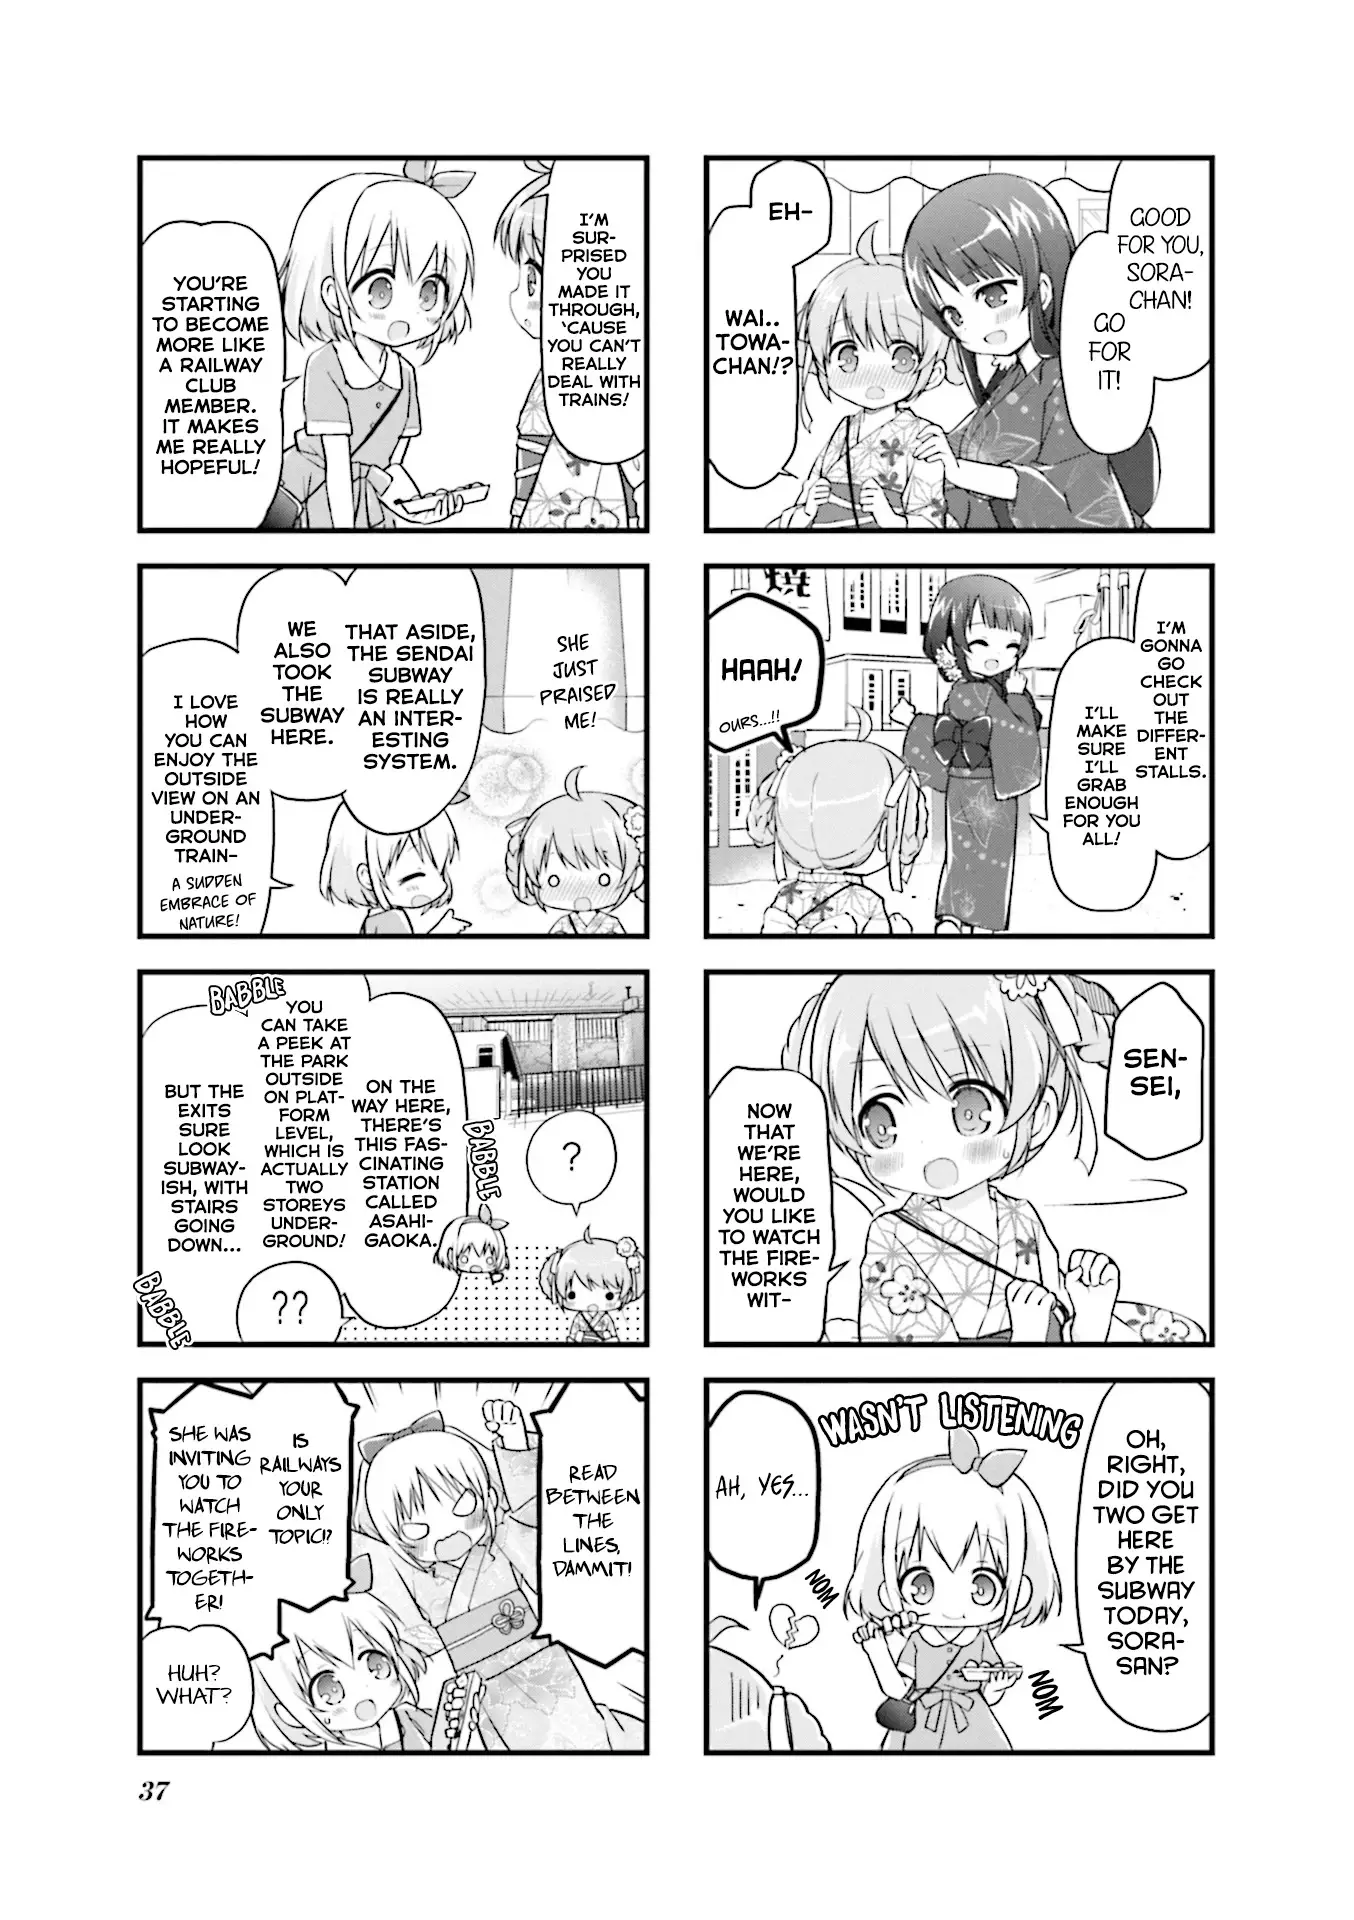 Hatsukoi*rail Trip - 17 page 5-8d2aece8